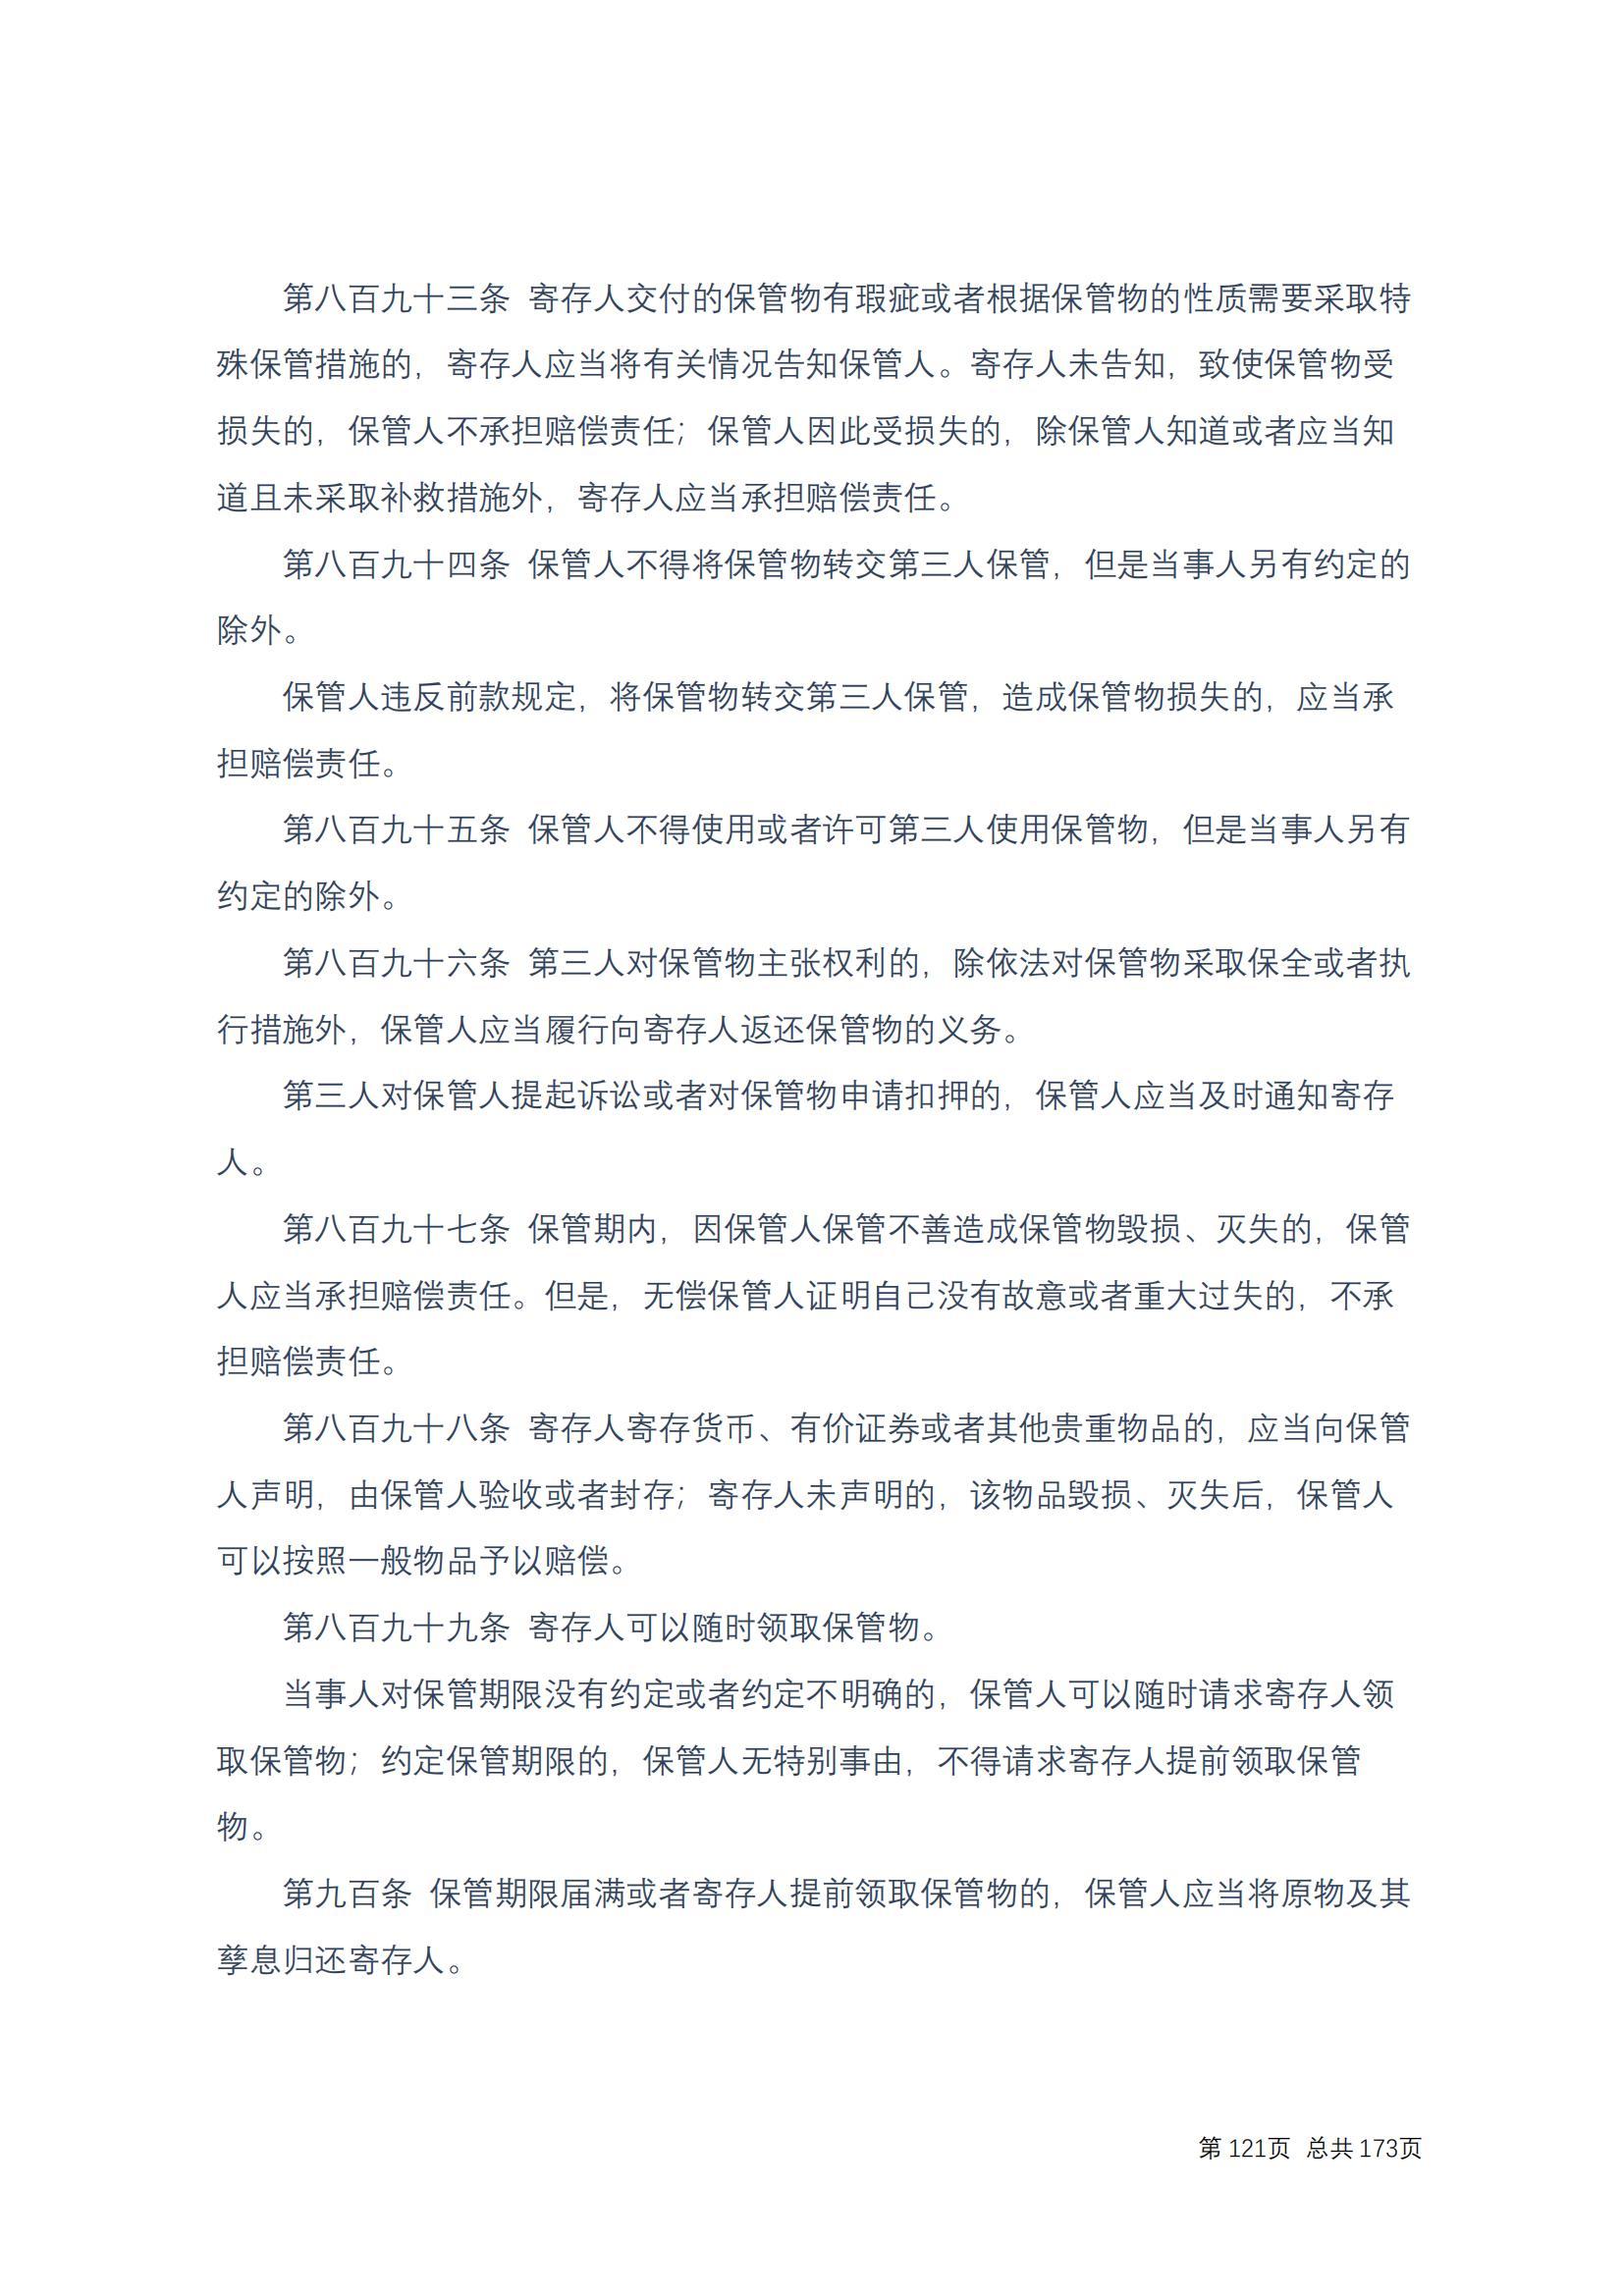 中华人民共和国民法典 修改过_120